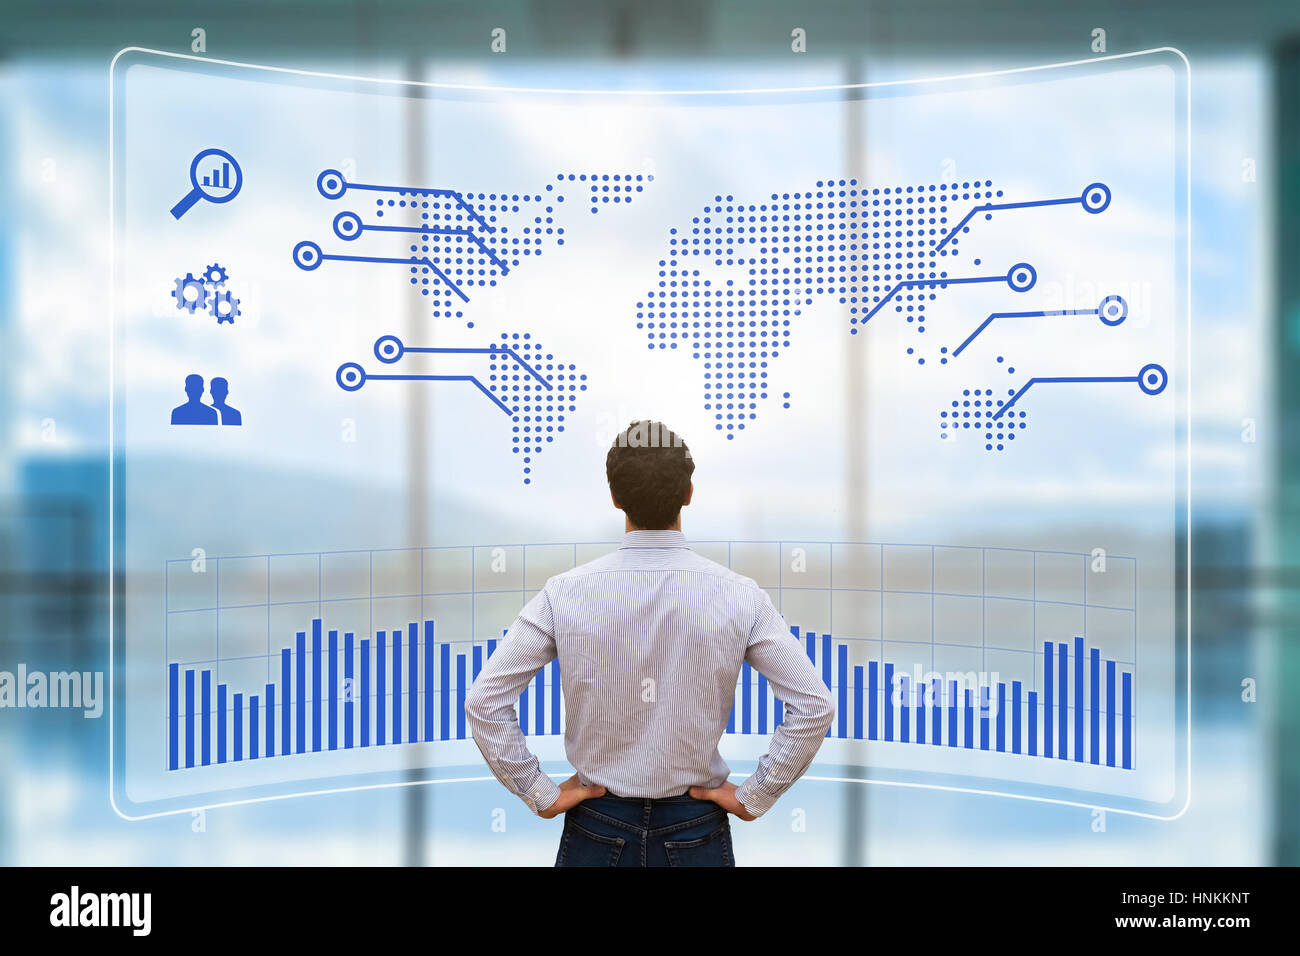 Weltweit Business-Konzept mit einer Person, die Analyse einer futuristischen Head-up-Display (HUD) mit einem Welt-Karte und Diagramm-Indikator über den internationalen Verkauf Stockfoto